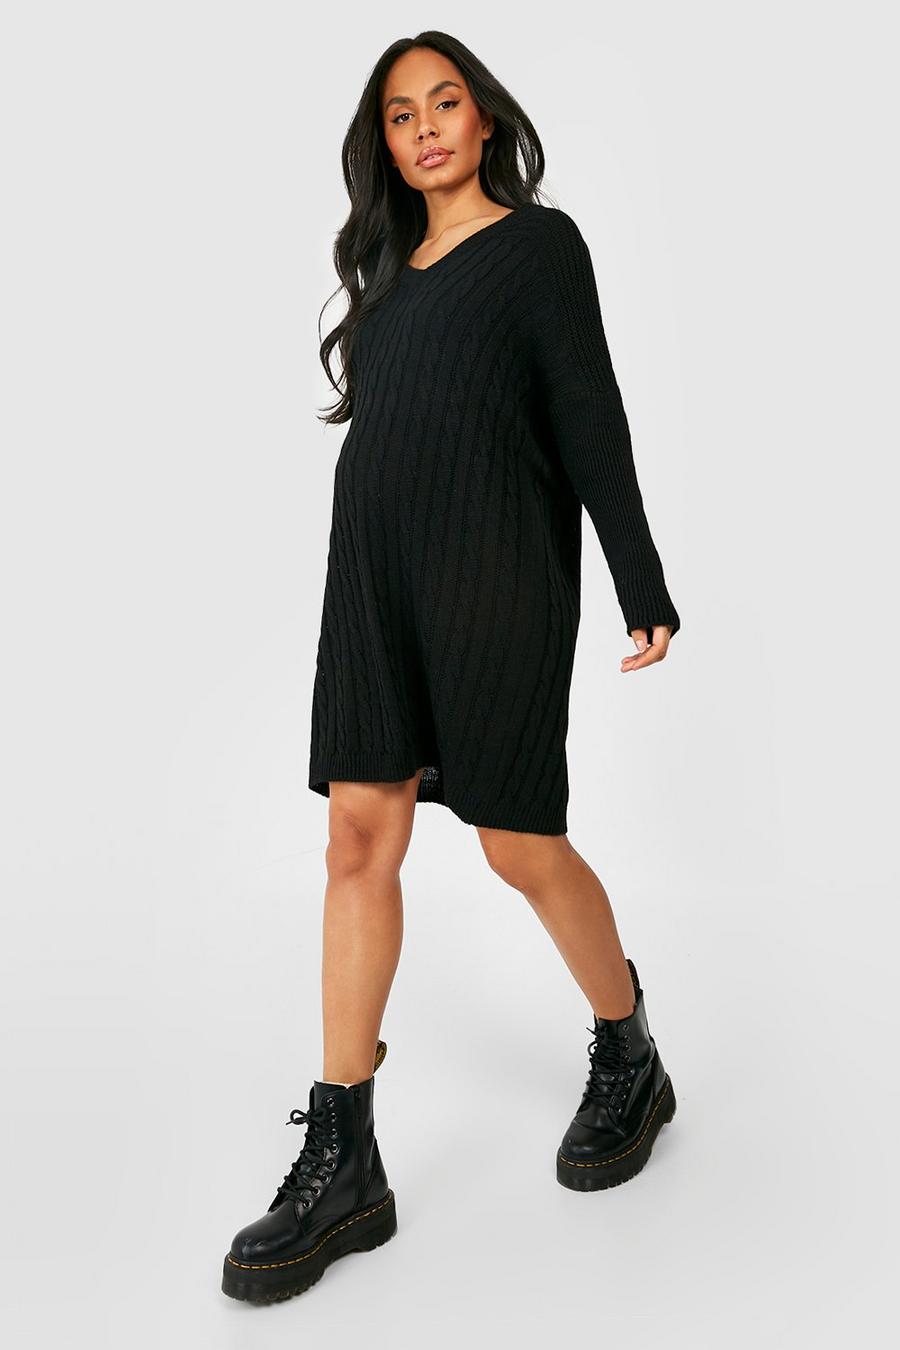 Black Maternity V Neck Knitted Swing Sweater Dress